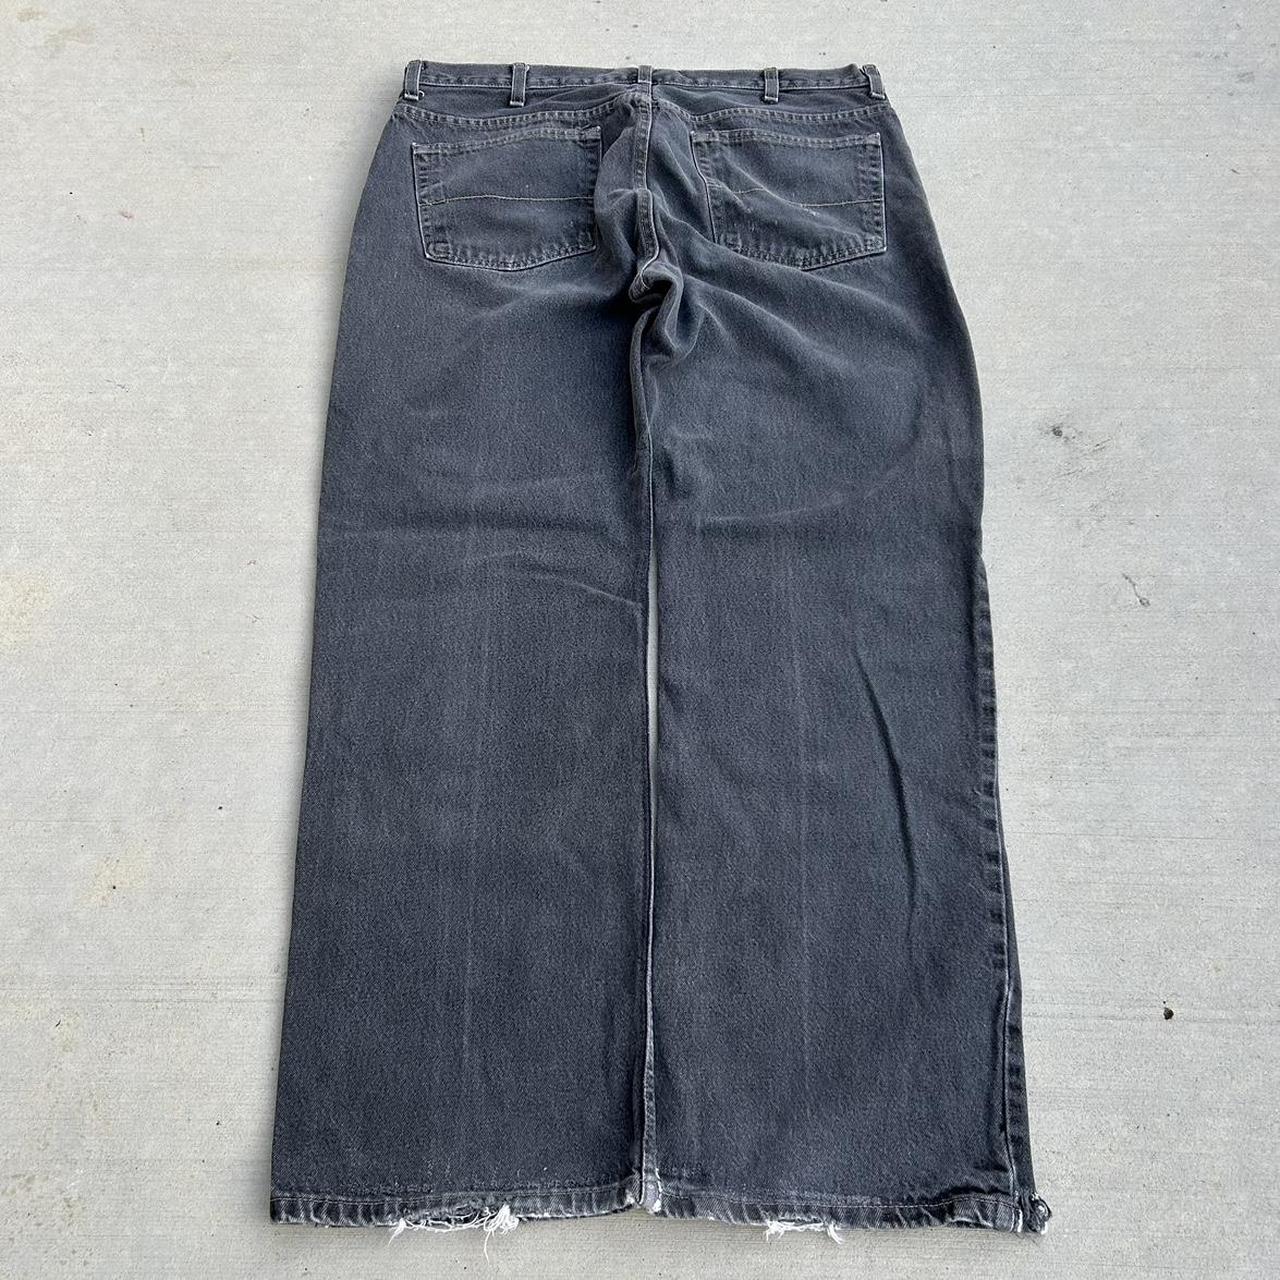 Vintage Skate Jeans Distressed Faded Denim Black... - Depop